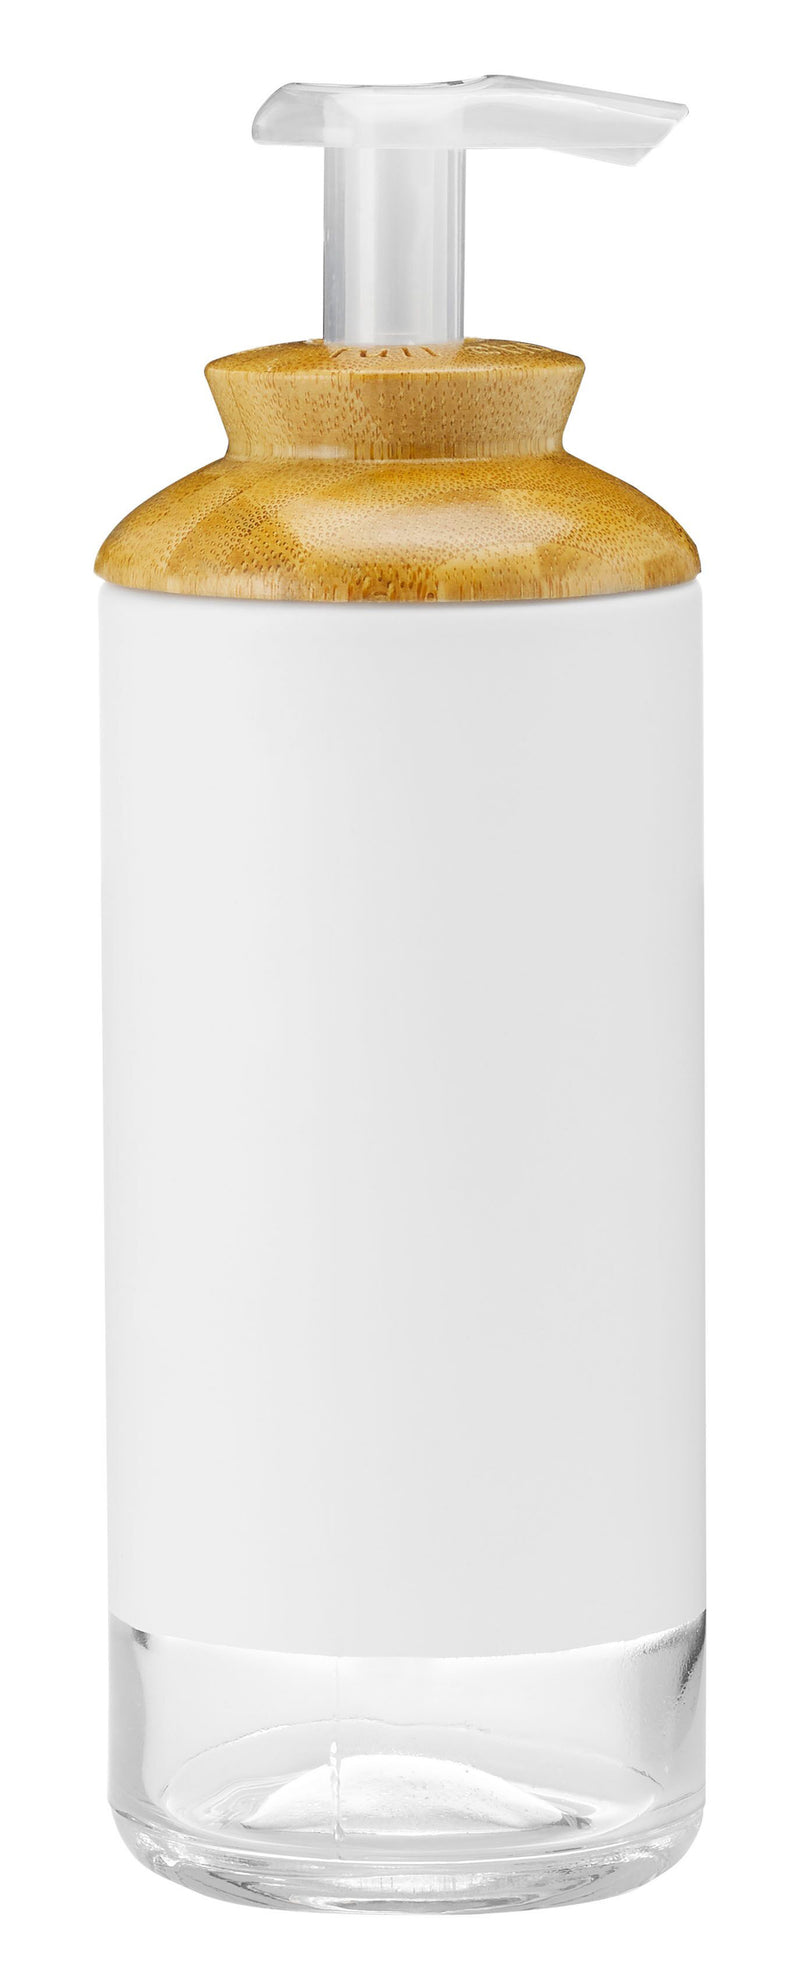 Full Circle Soap Opera Lotion Dispenser 354ml